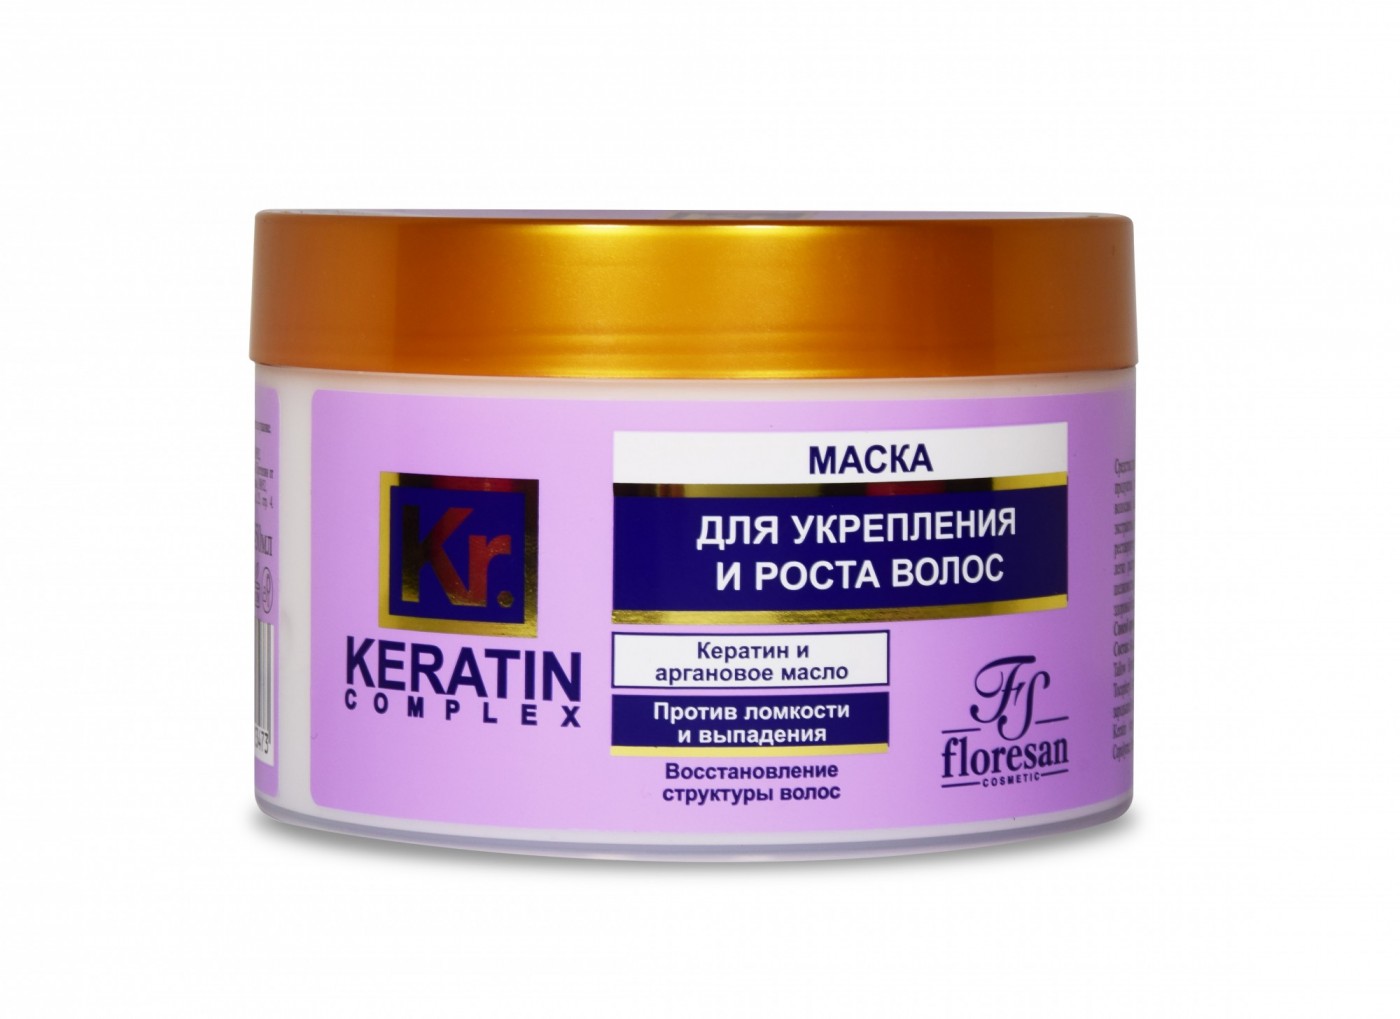 Маска для укрепления и роста волос Floresan Кератиновая